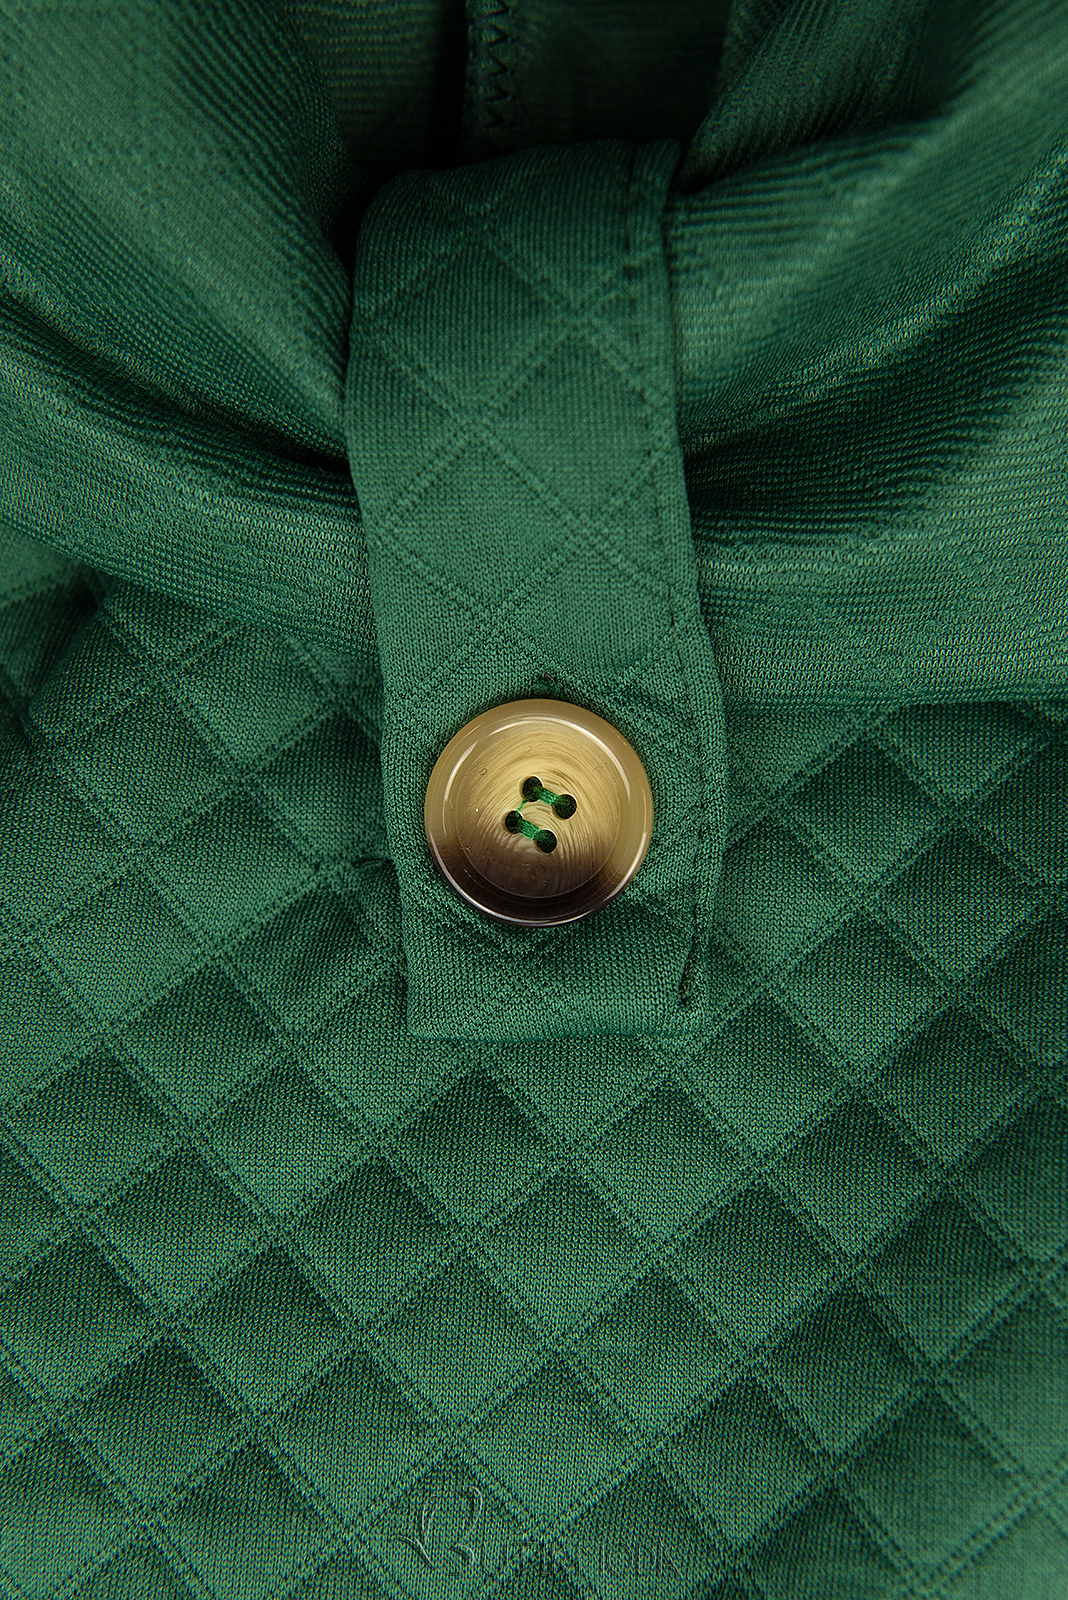 Sötétzöld színű steppelt ruha övvel